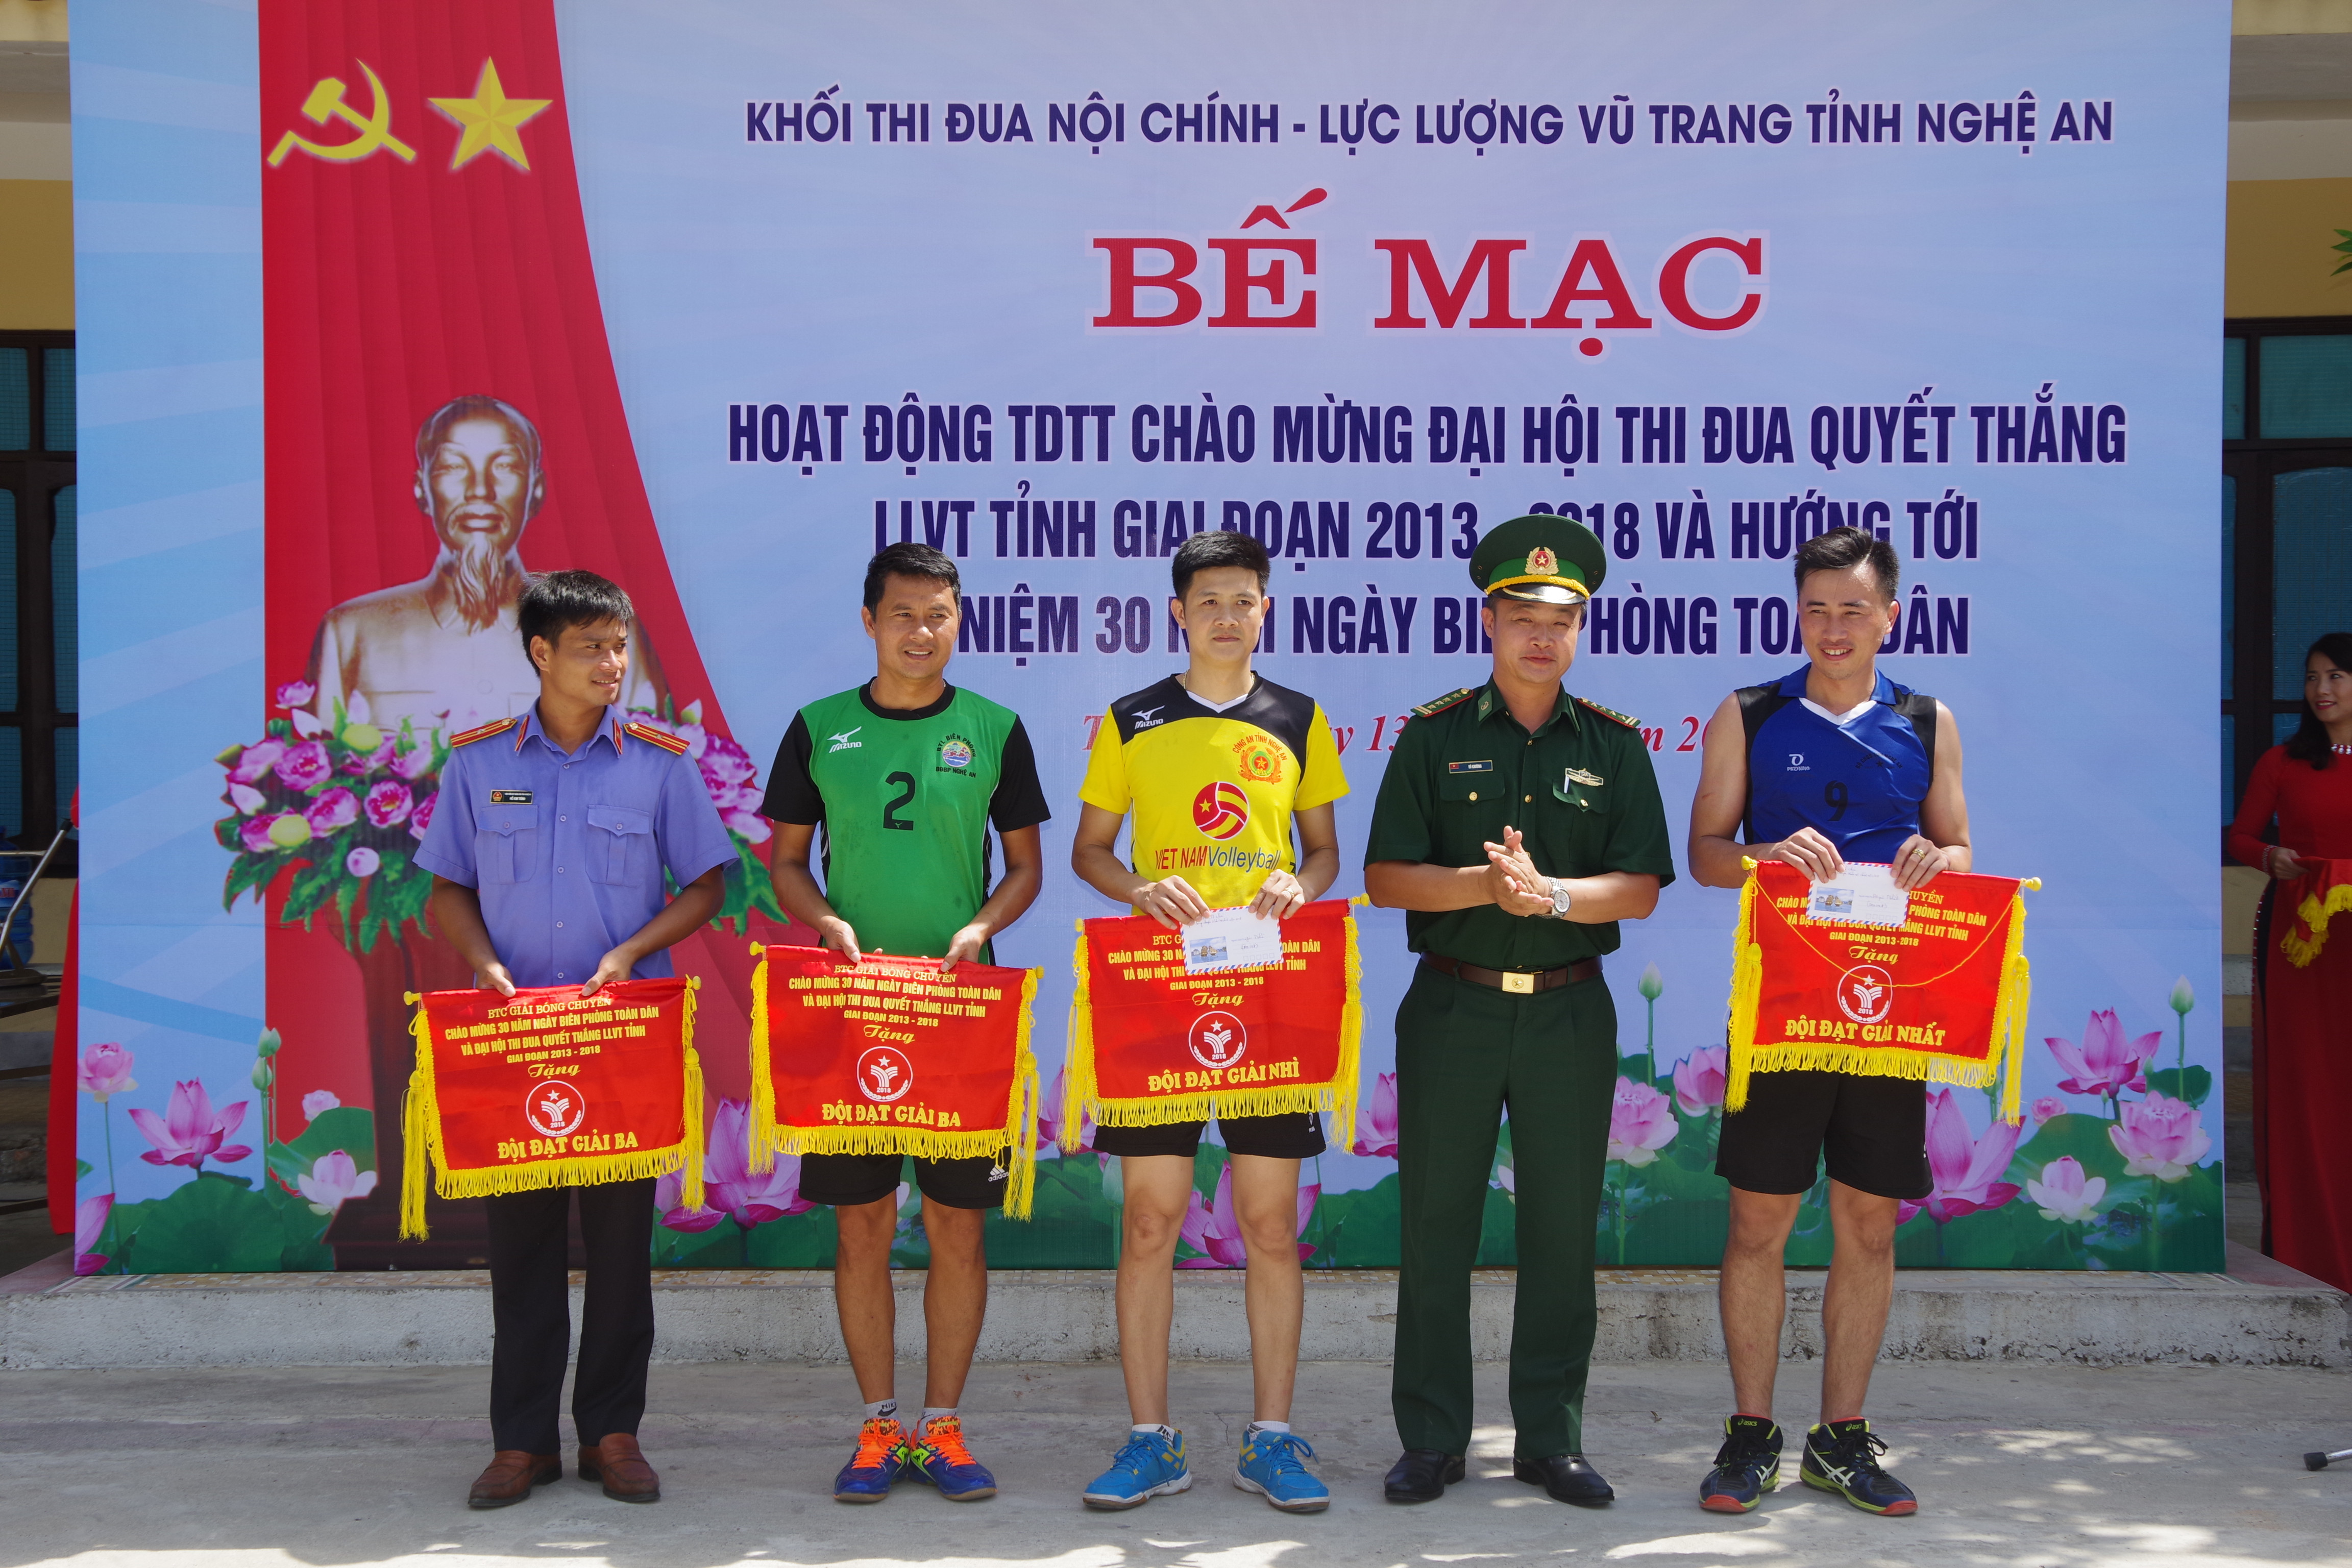 Đai tá Vũ Khương - Phó chỉ huy trưởng BĐBP tỉnh trao tặng phần thưởng cho các đội đạt giải. Ảnh: Hải Thượng